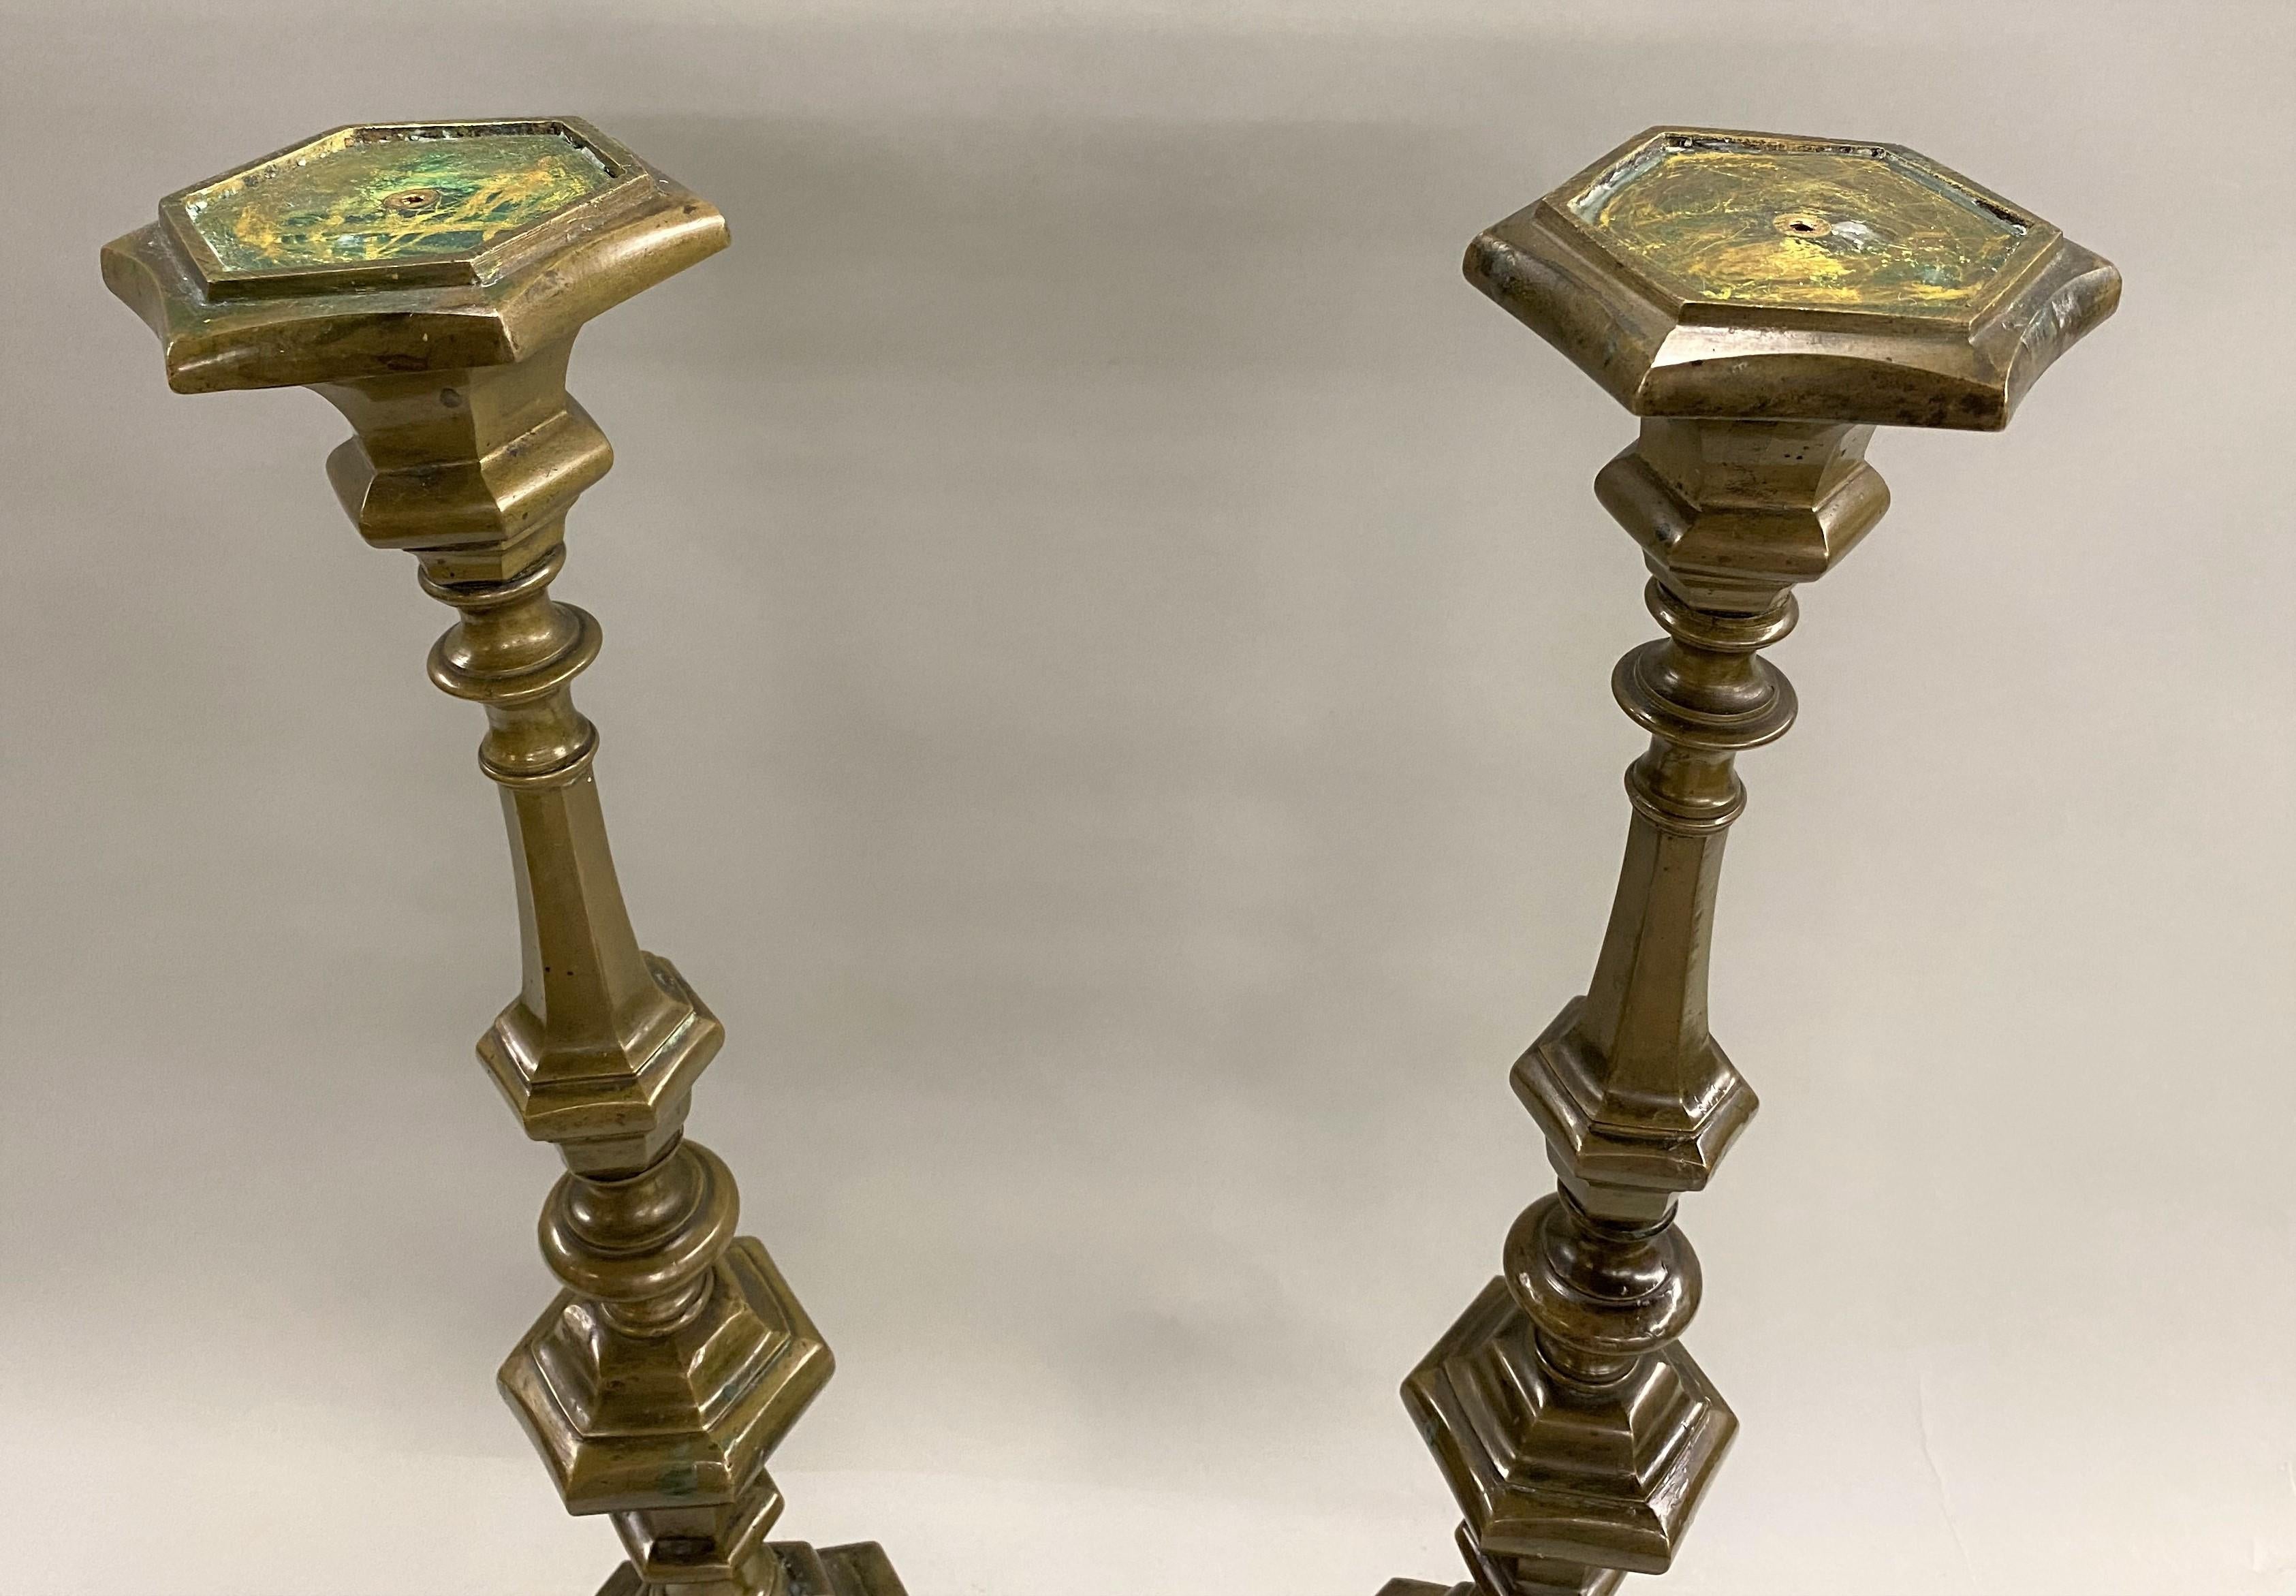 Une impressionnante paire de chandeliers en bronze patiné de style baroque avec une tige de forme balustre et des pieds tripodes, d'origine continentale (peut-être italienne) datant du 18ème siècle, transformés en lampes au 20ème siècle. Les câbles